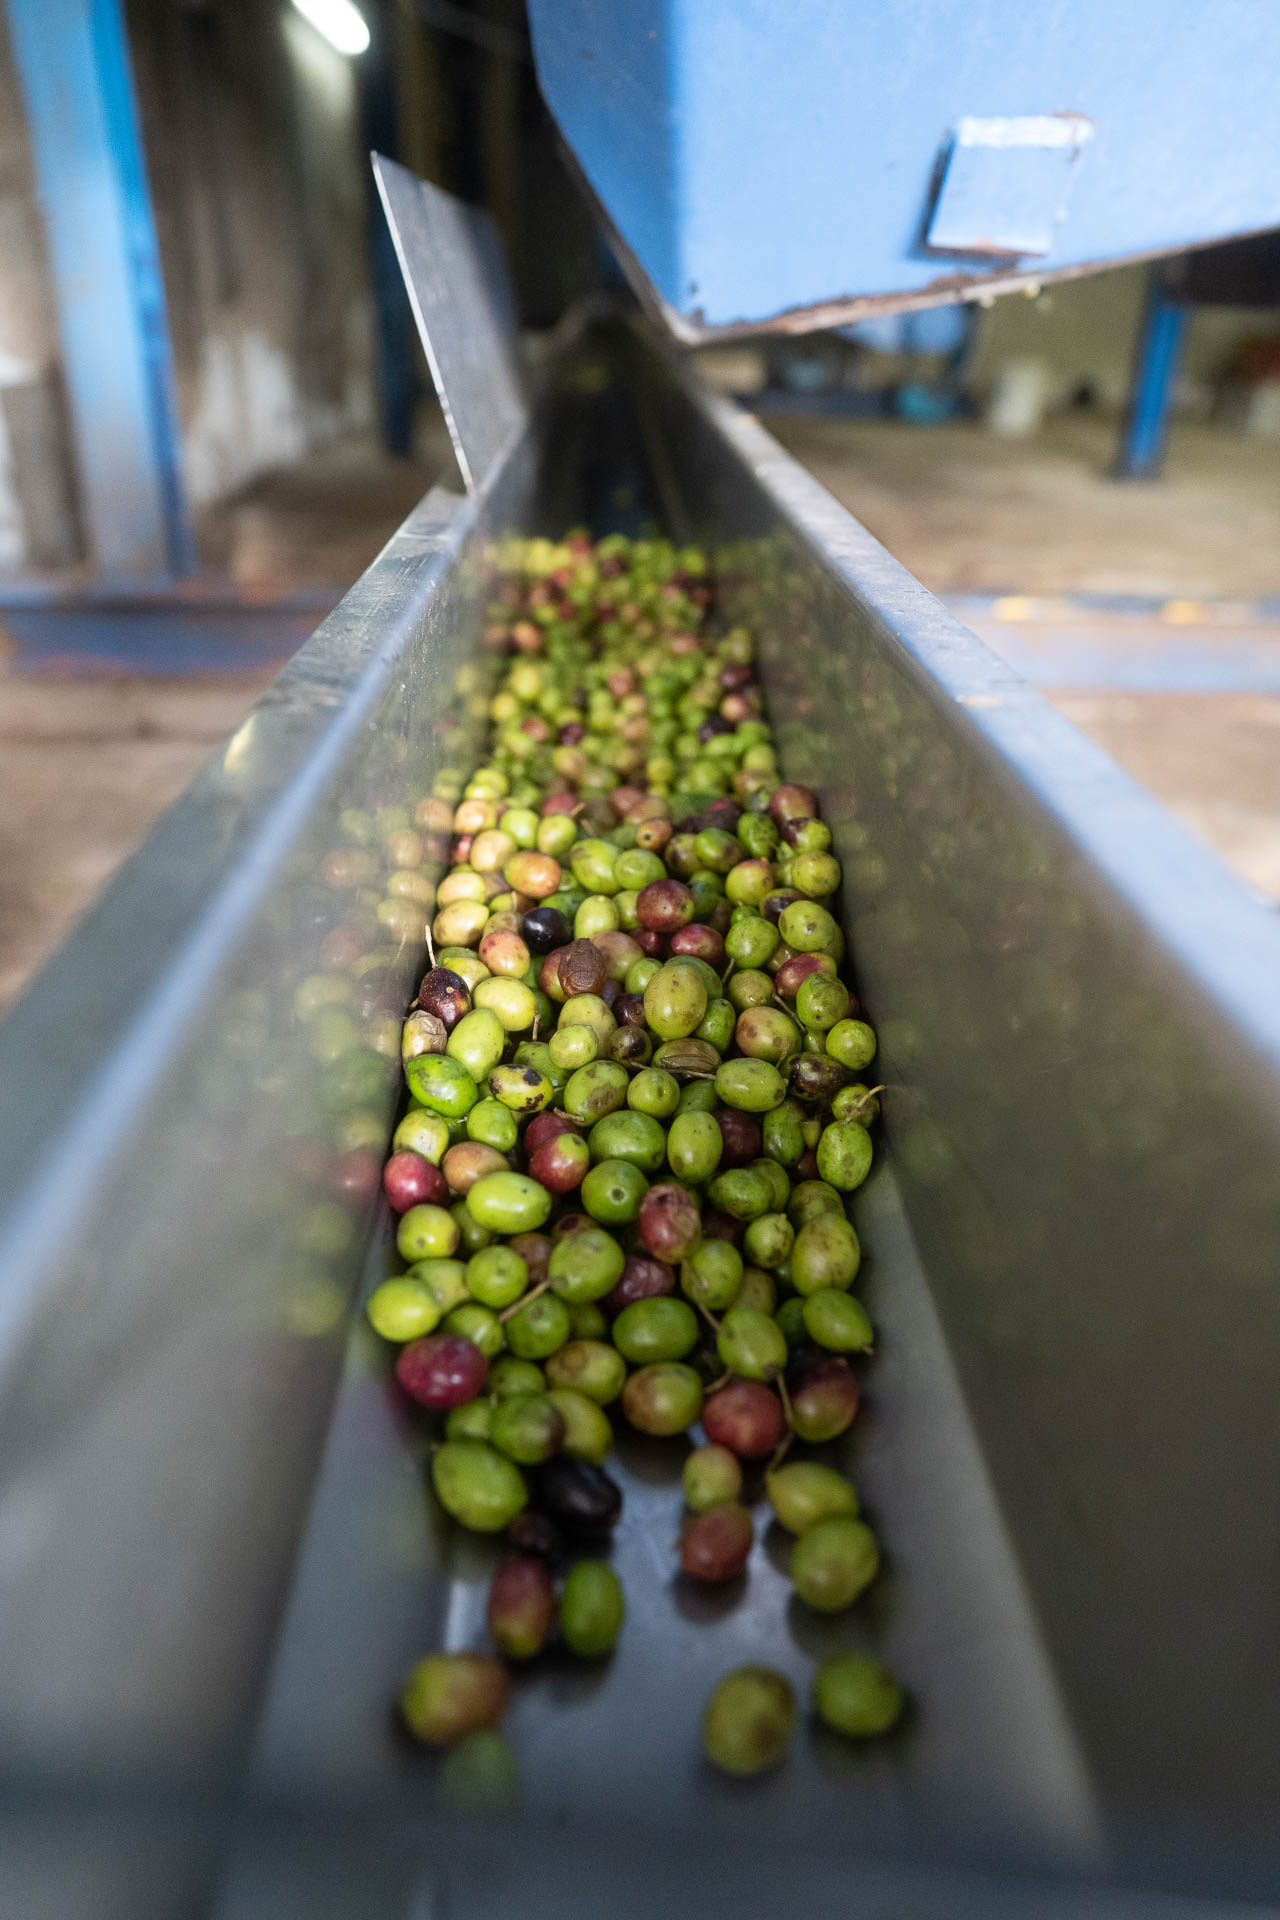 Die gesammelten Oliveres1 Oliven sind auf dem Weg in die Kaltpresse.